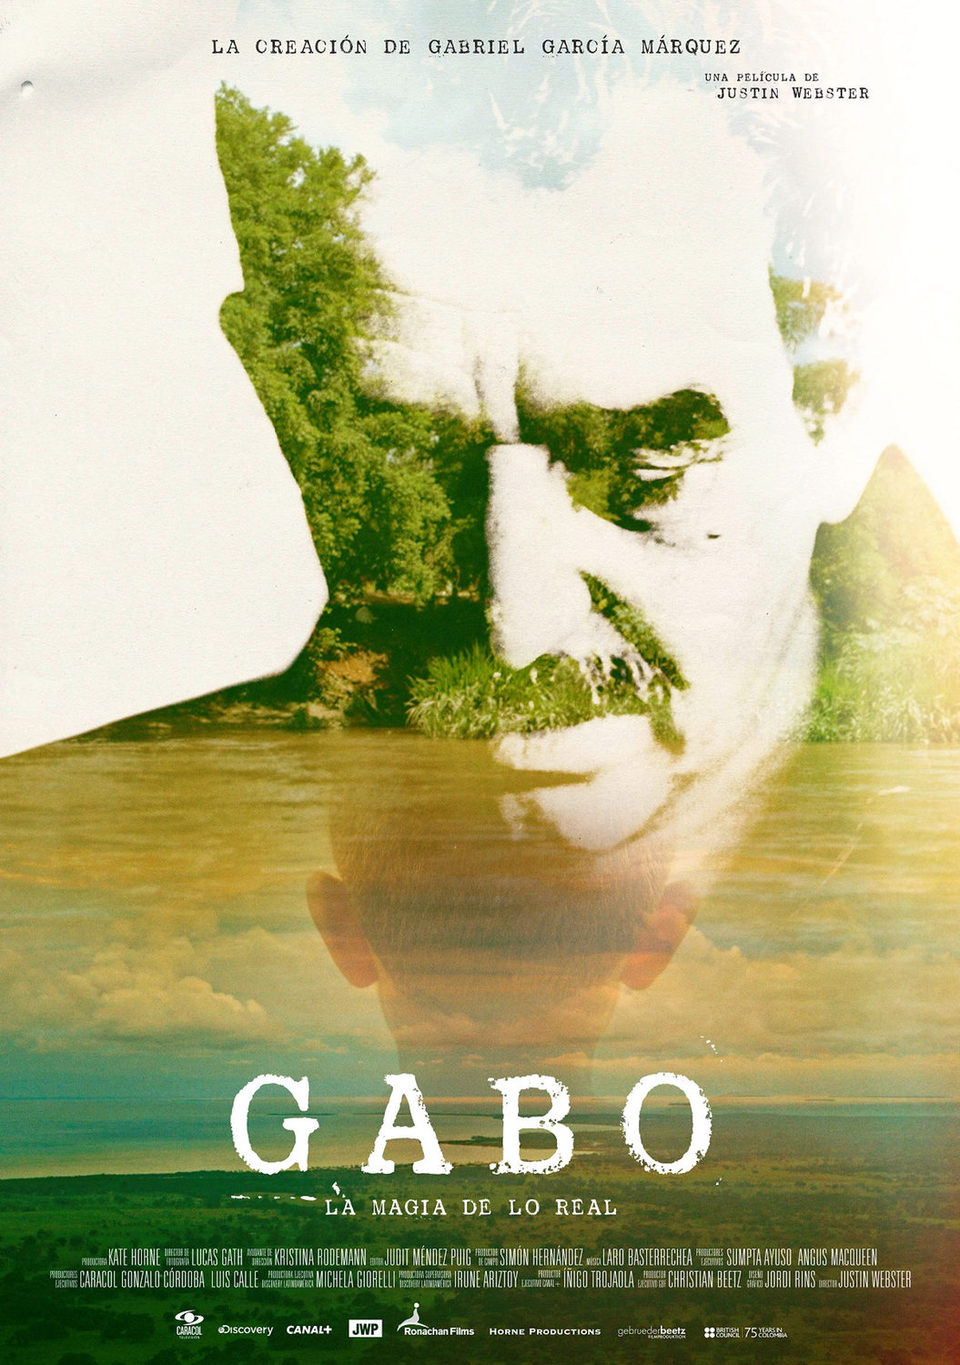 Poster of Gabo: The Creation of Gabriel Garcia Marquez - España